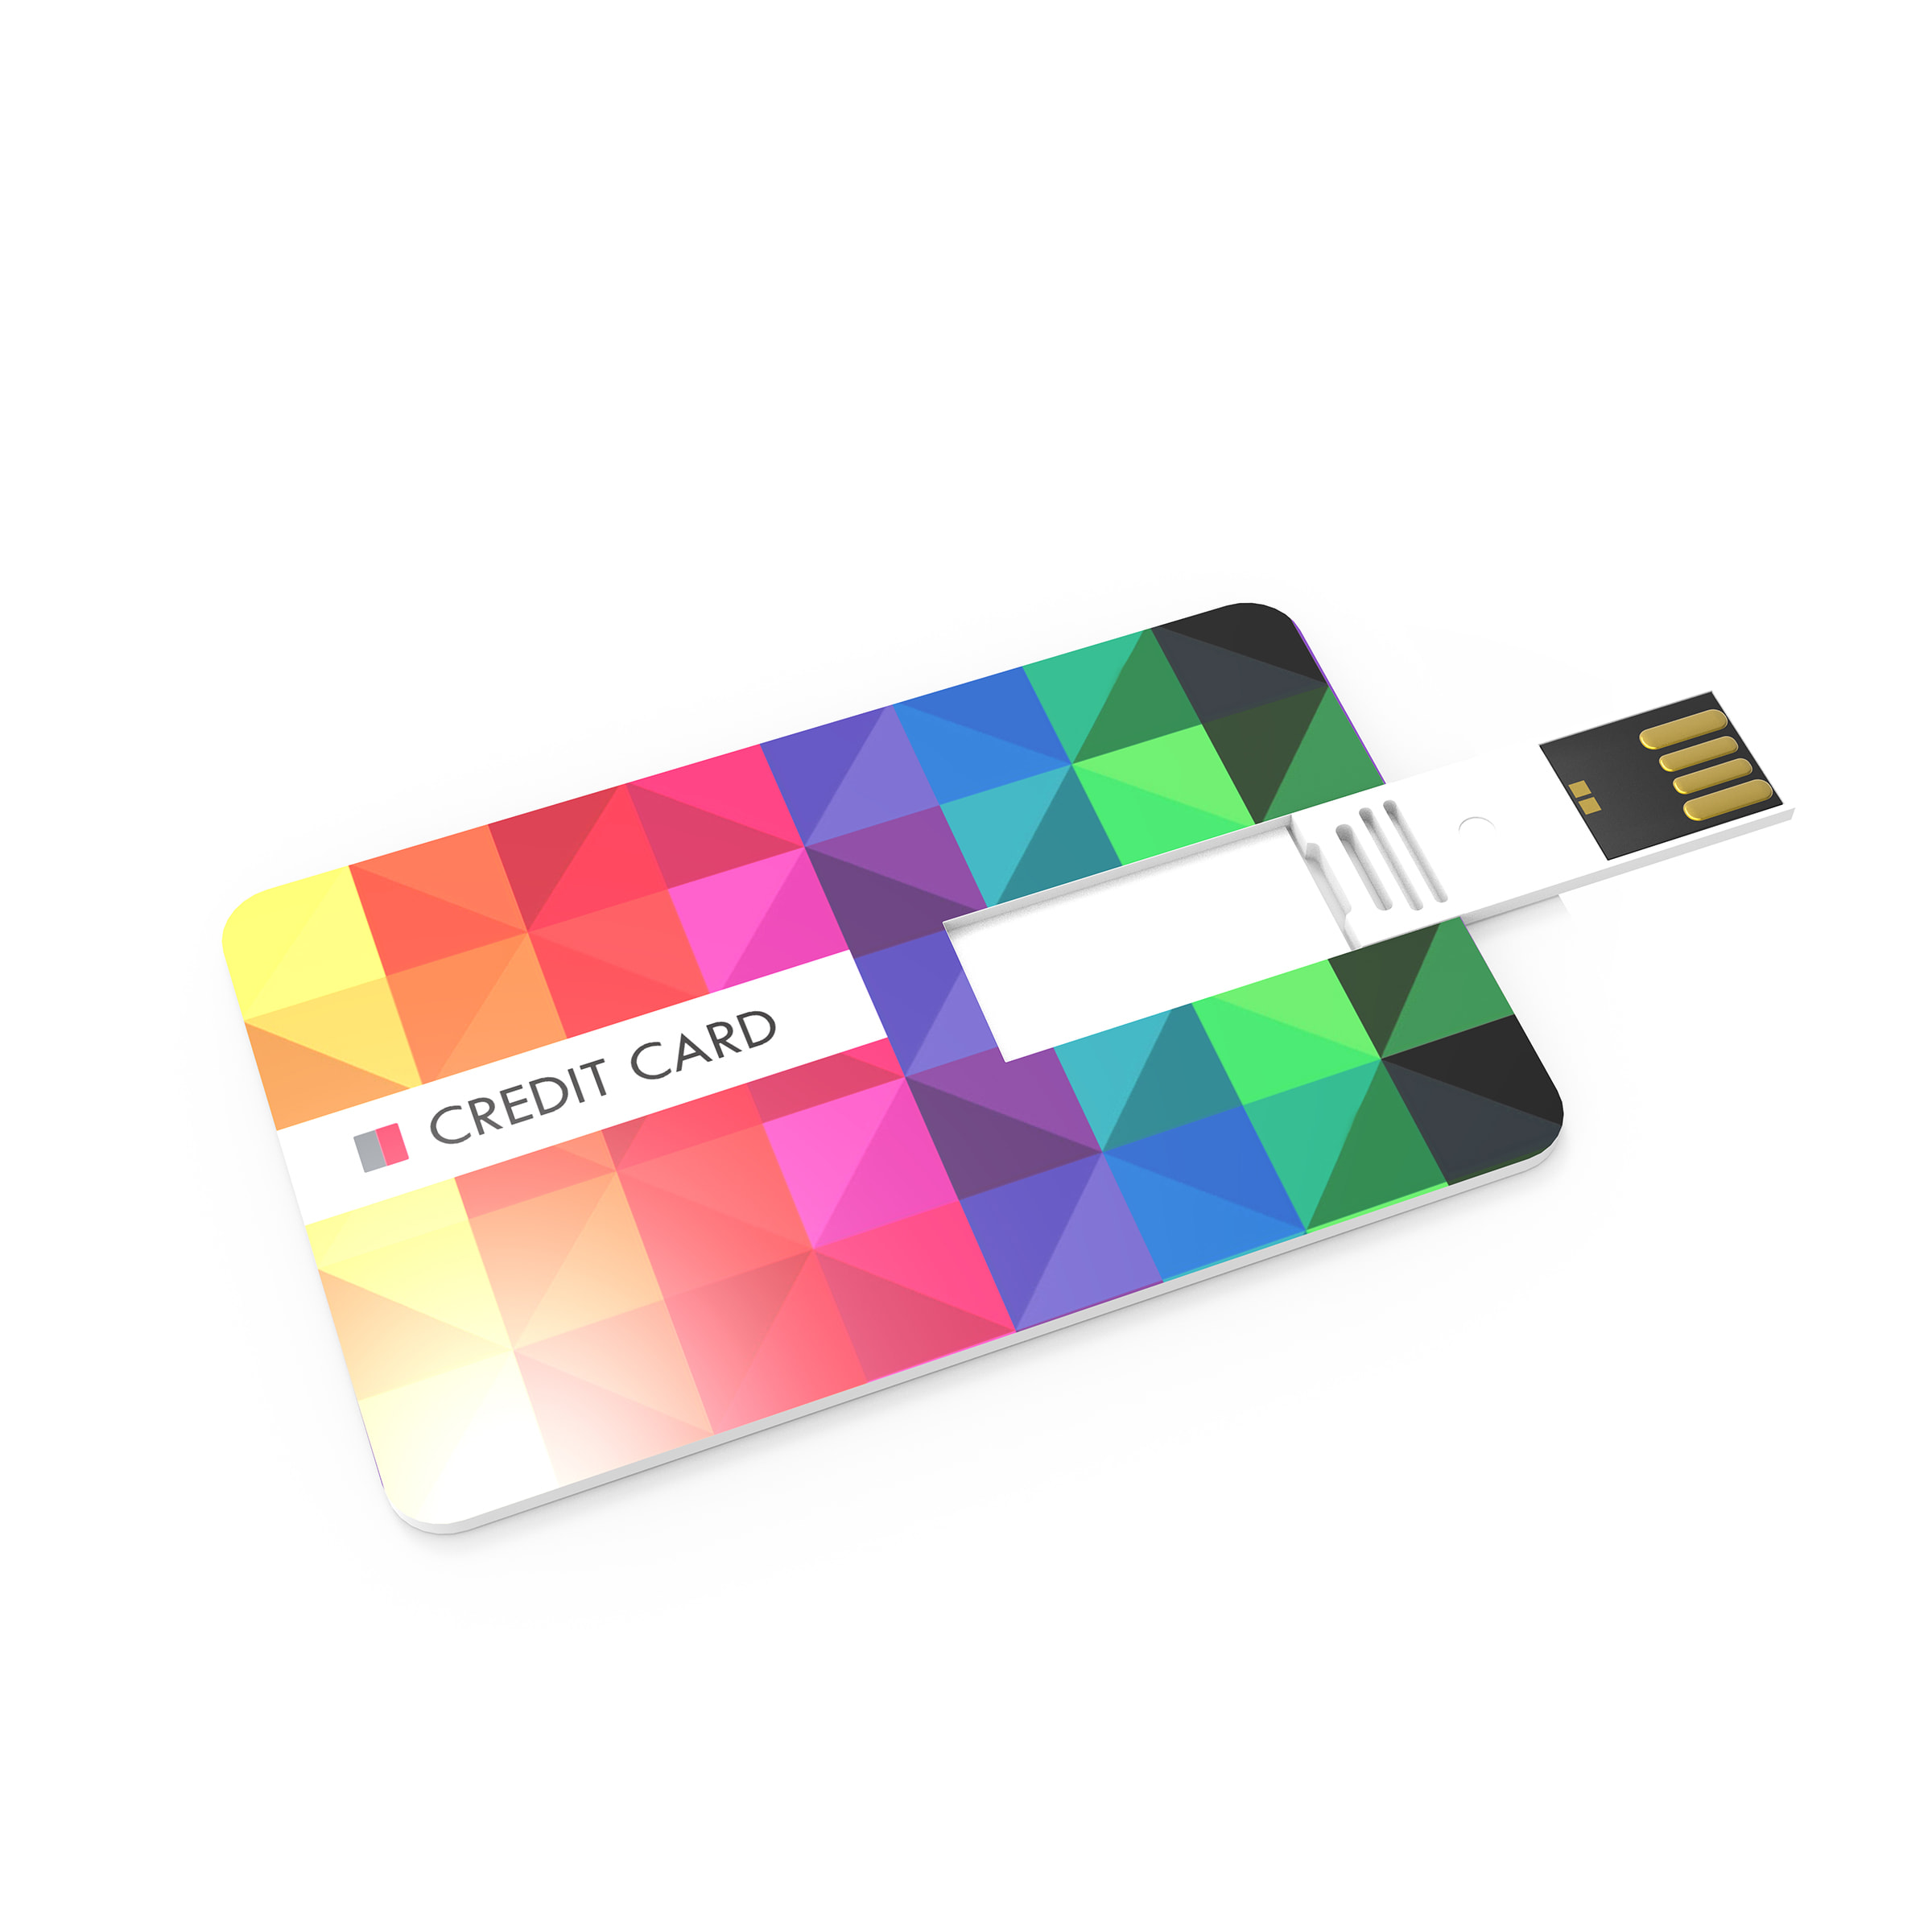 USB Cards